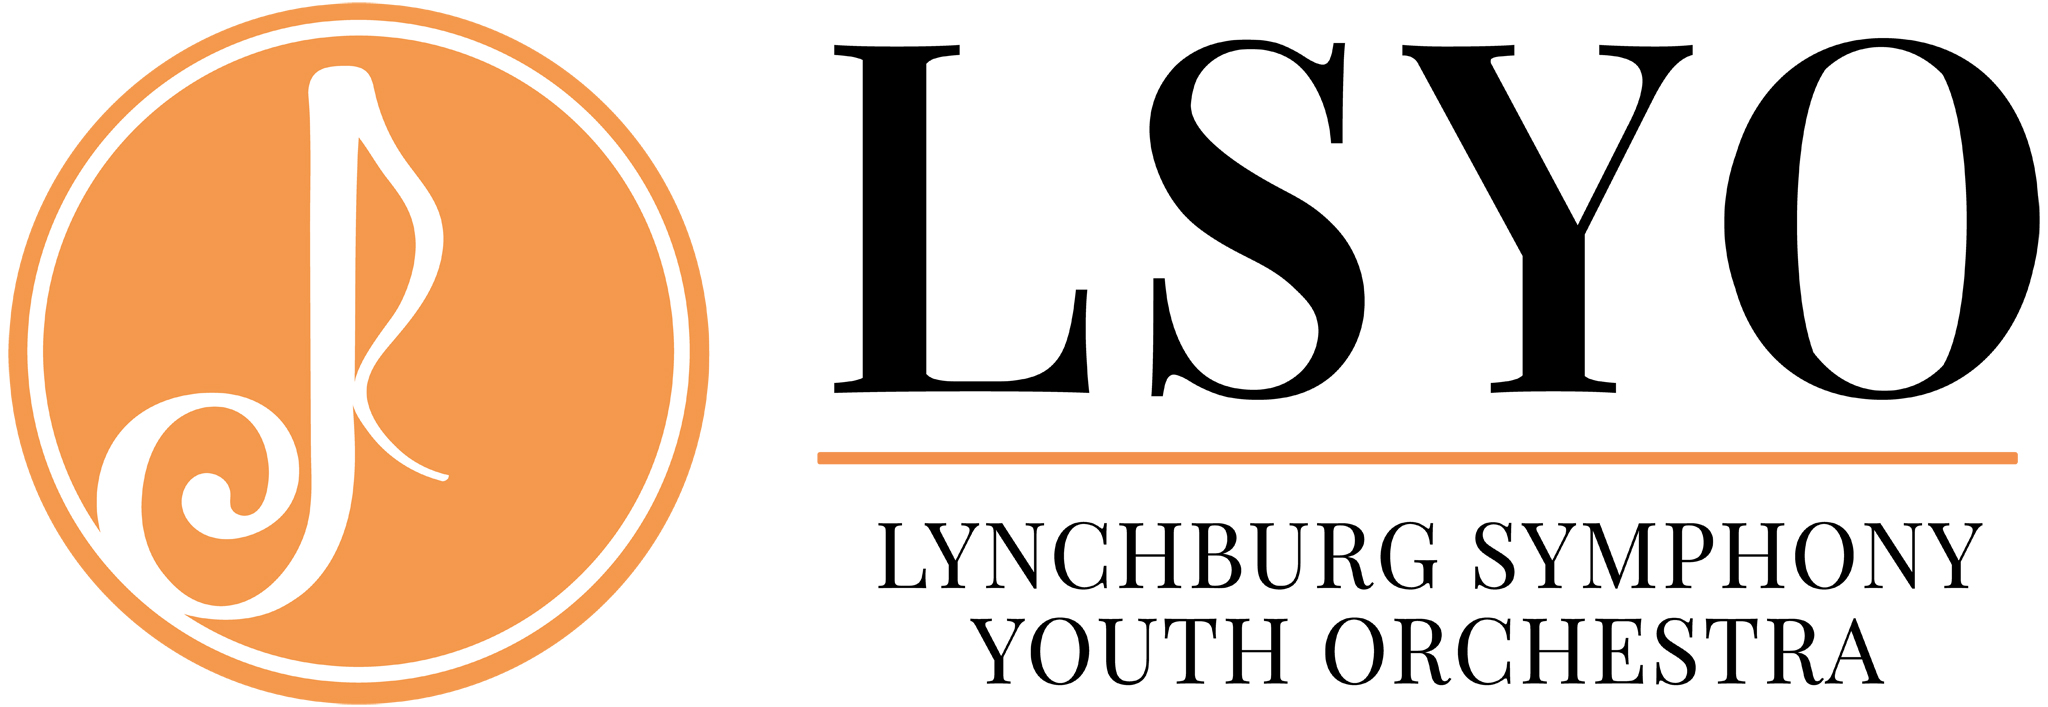 Lynchburg Symphony Youth Orchestra logo